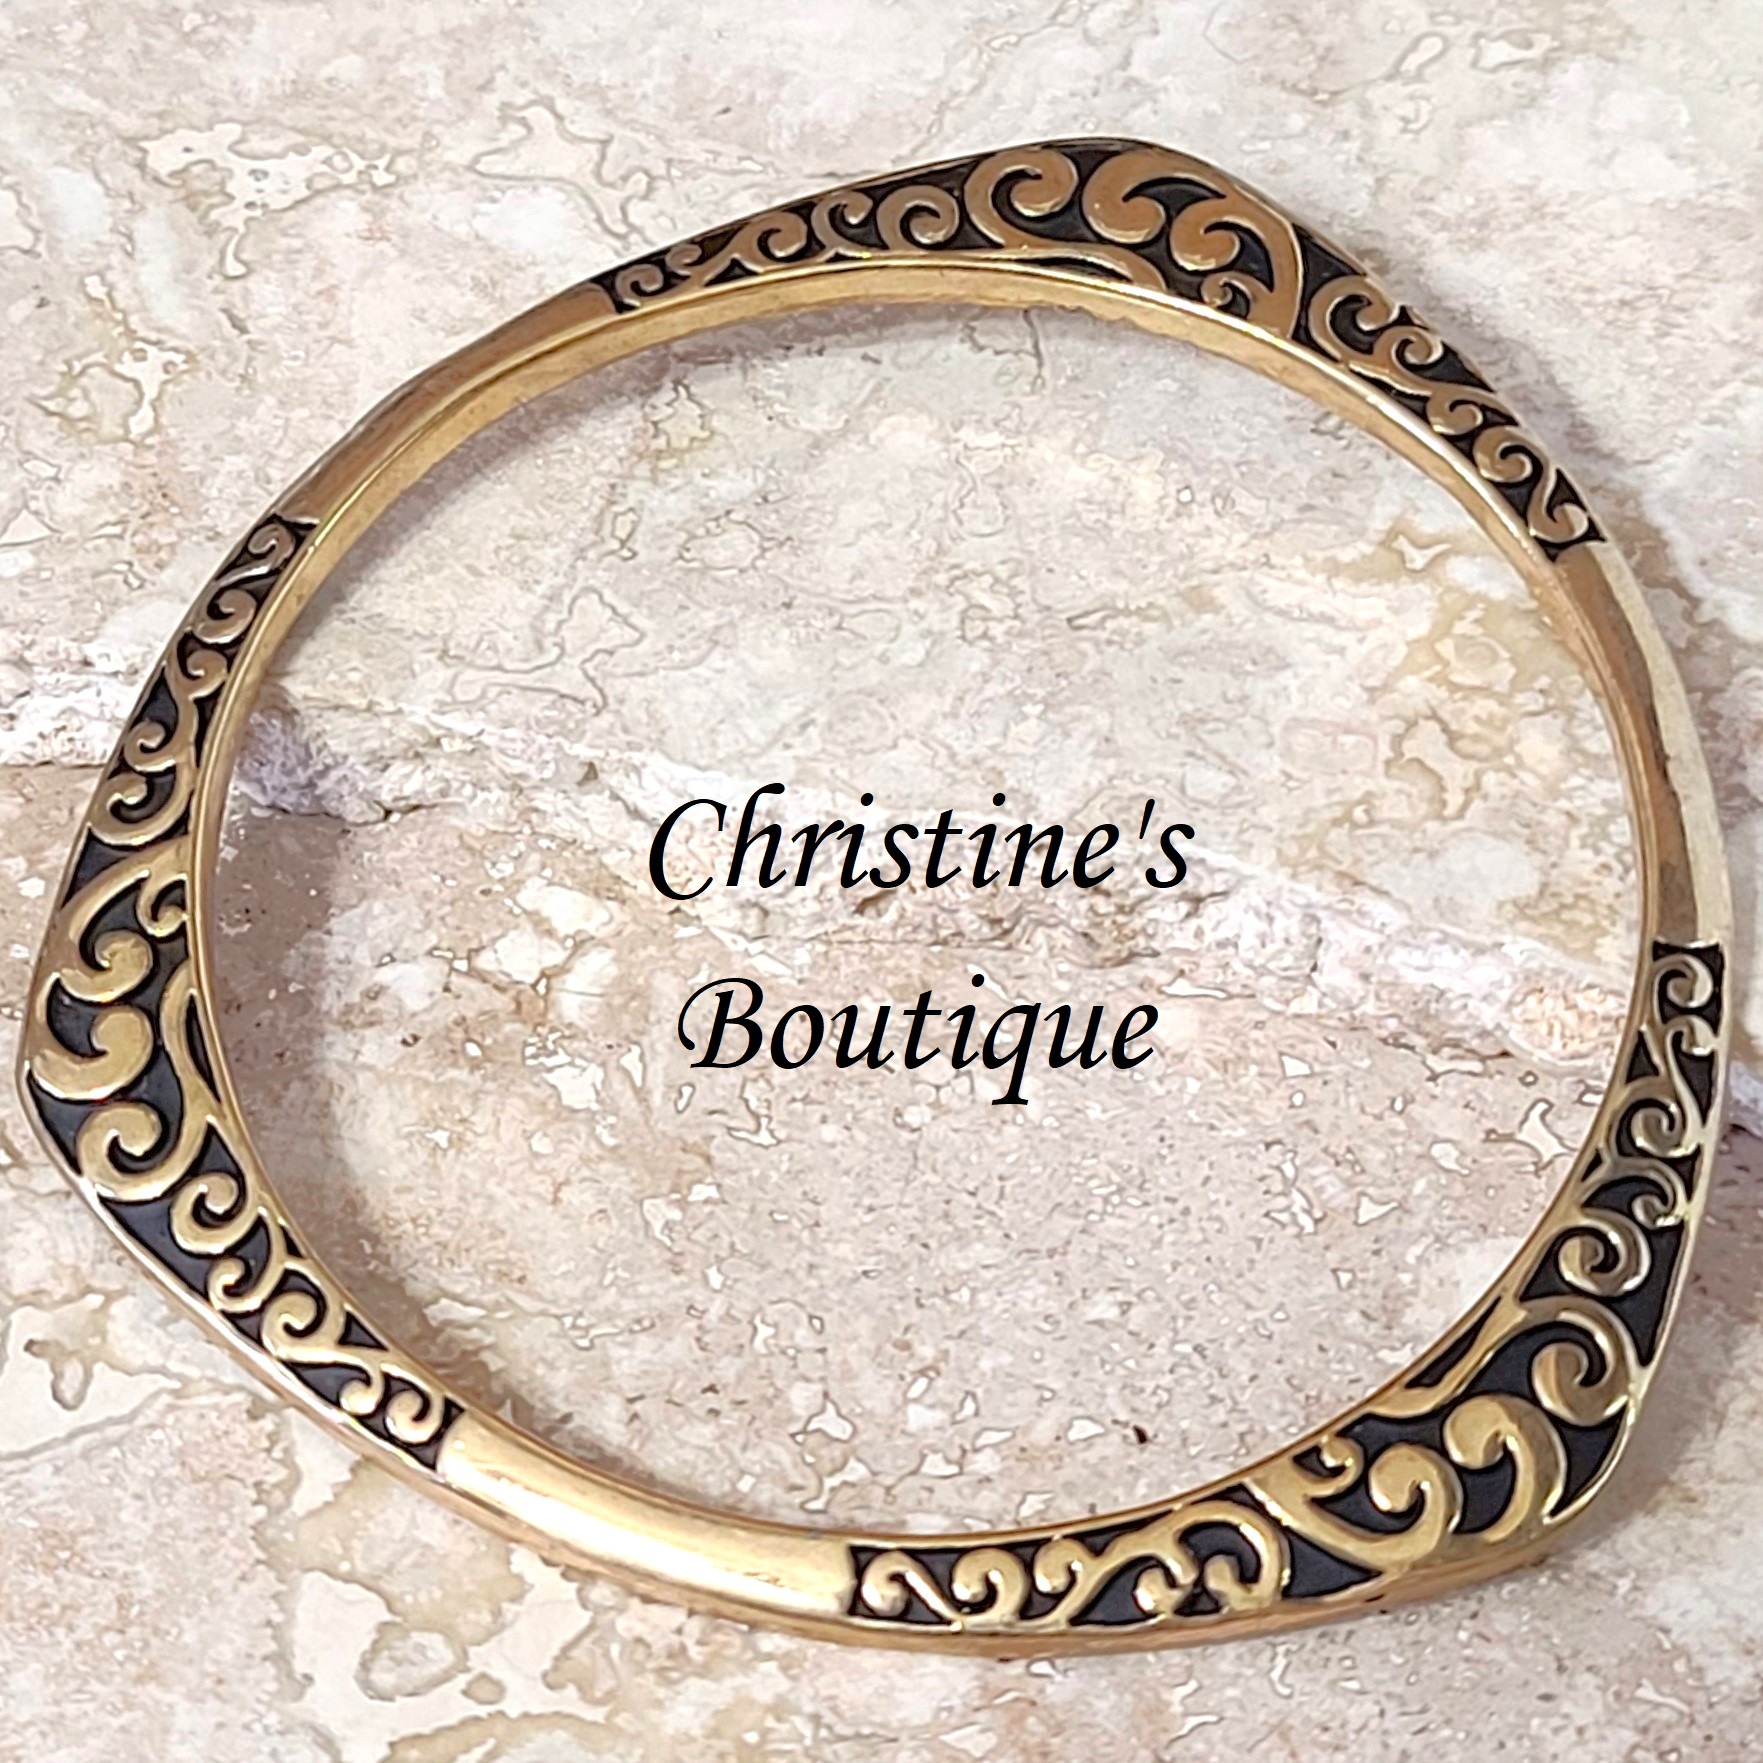 Flat bangle bracelet, fashion bracelet goldtone with black scrolled design